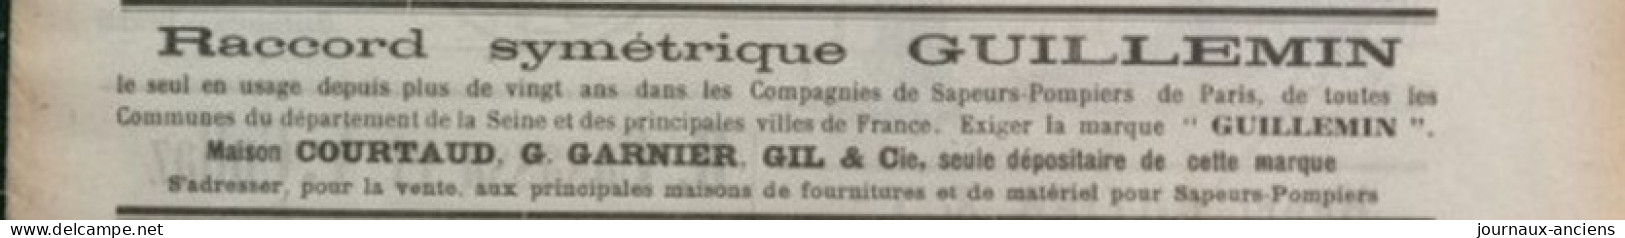 1912 Journal des SAPEURS POMPIERS - INCENDIE DE FORÊTS - CONCOURS DE BELFORT - FEU À PARIS - LE FERTÉ BERNARD